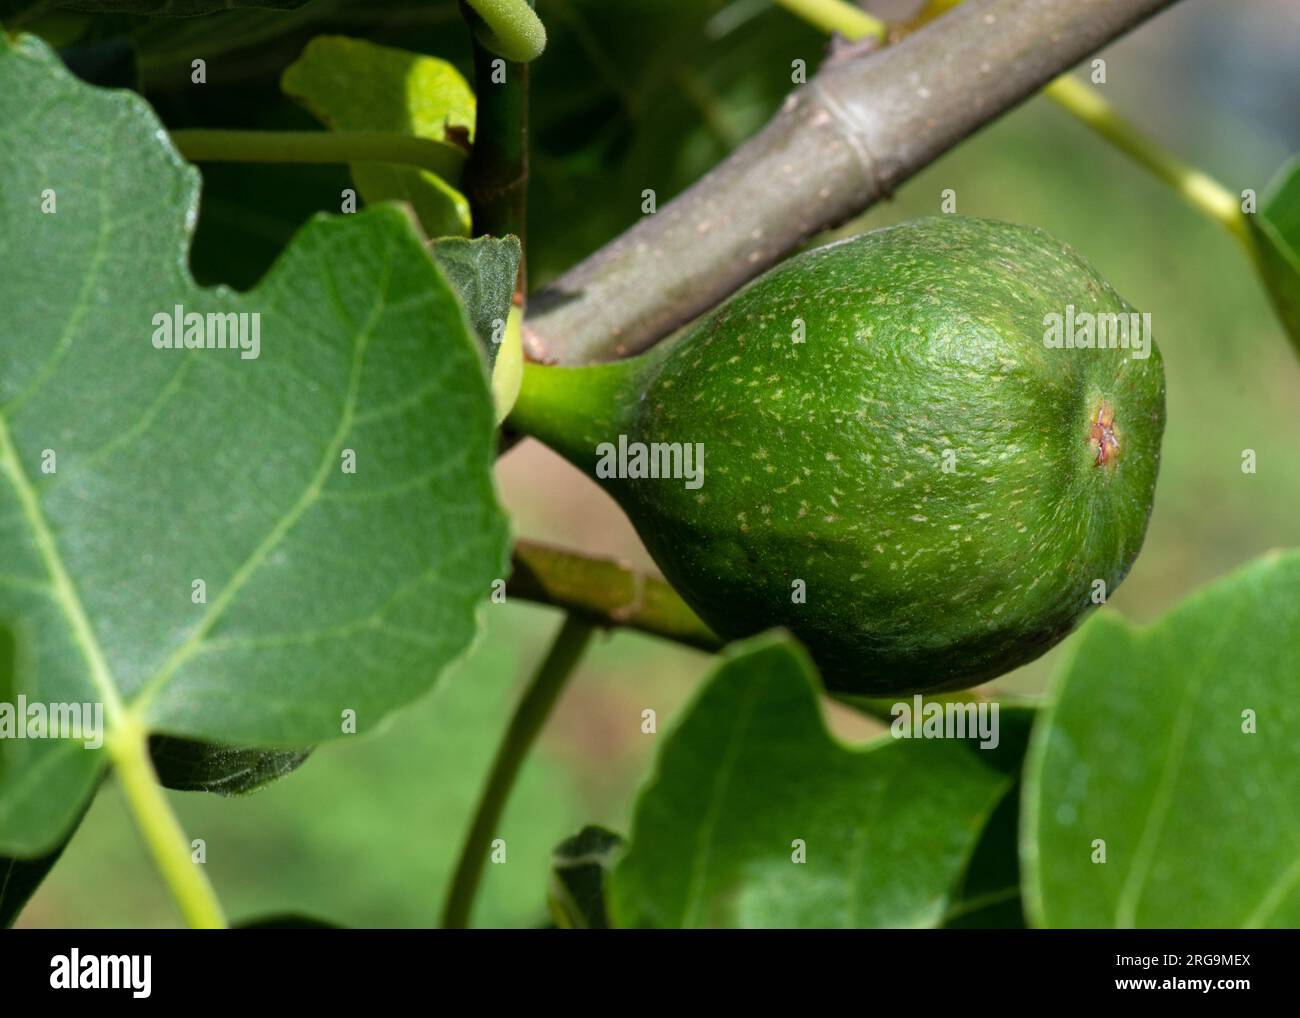 Nahaufnahme einer jungen Feige, die auf einem Ficus-carica-Baum wächst, der als allgemeiner negativer Farbraum auf der linken Seite für Text bekannt ist Stockfoto